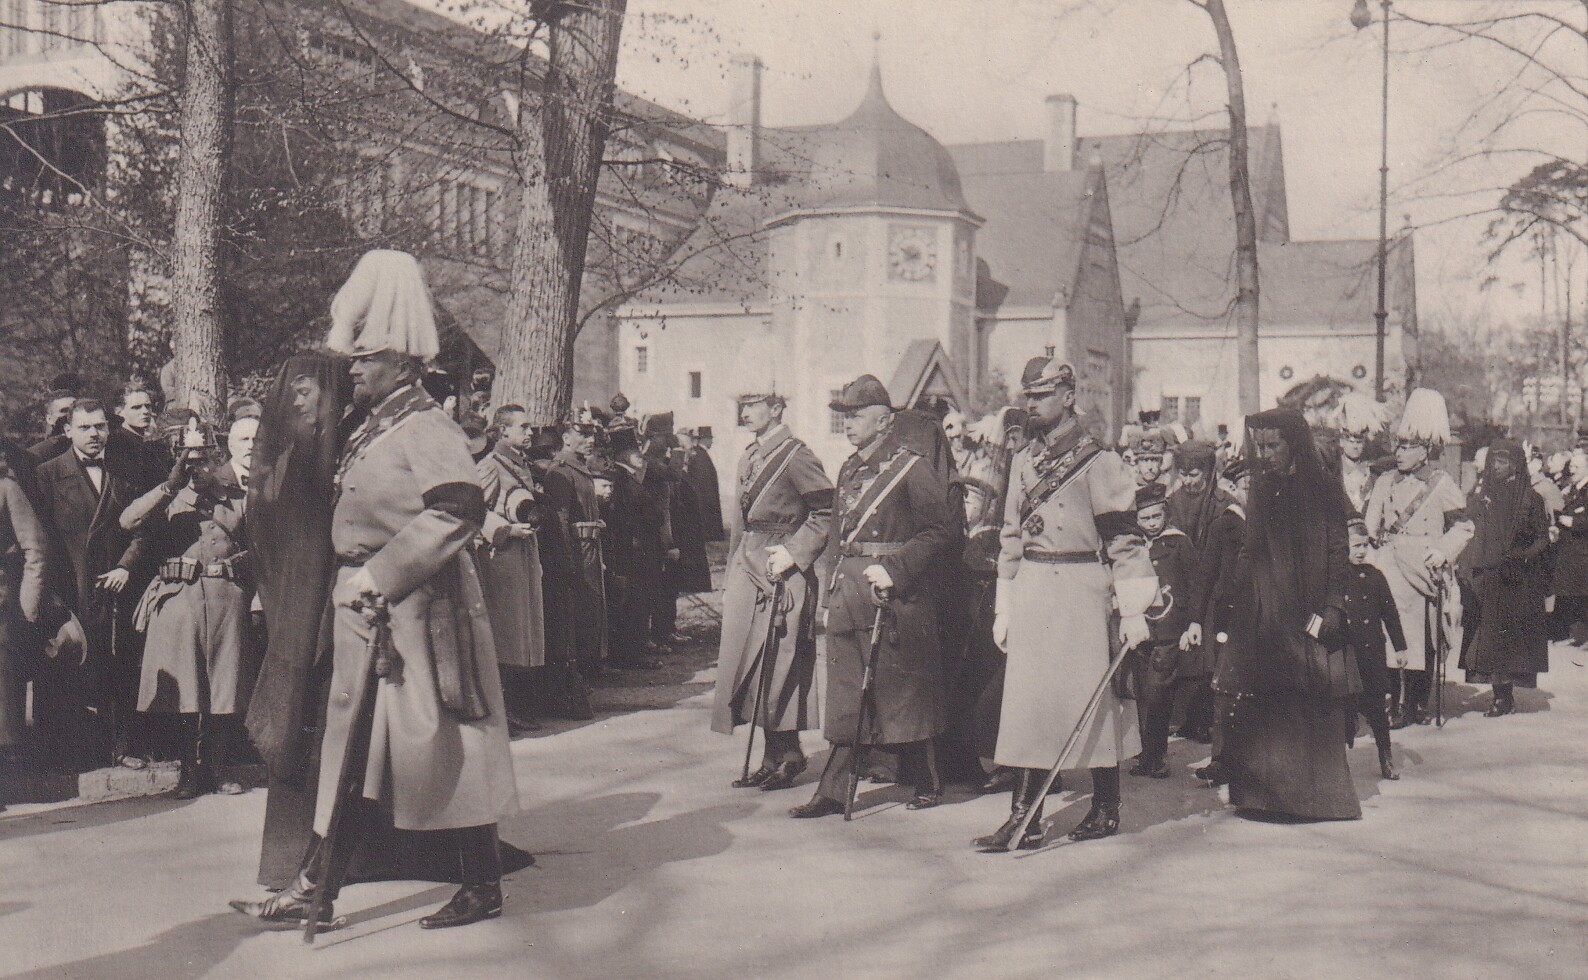 Bildpostkarte mit Foto des Trauerzugs bei der Beisetzung der ehemaligen deutschen Kaiserin Auguste Viktoria (1858-1921) in Potsdam, 19. April 1921 (Schloß Wernigerode GmbH RR-F)